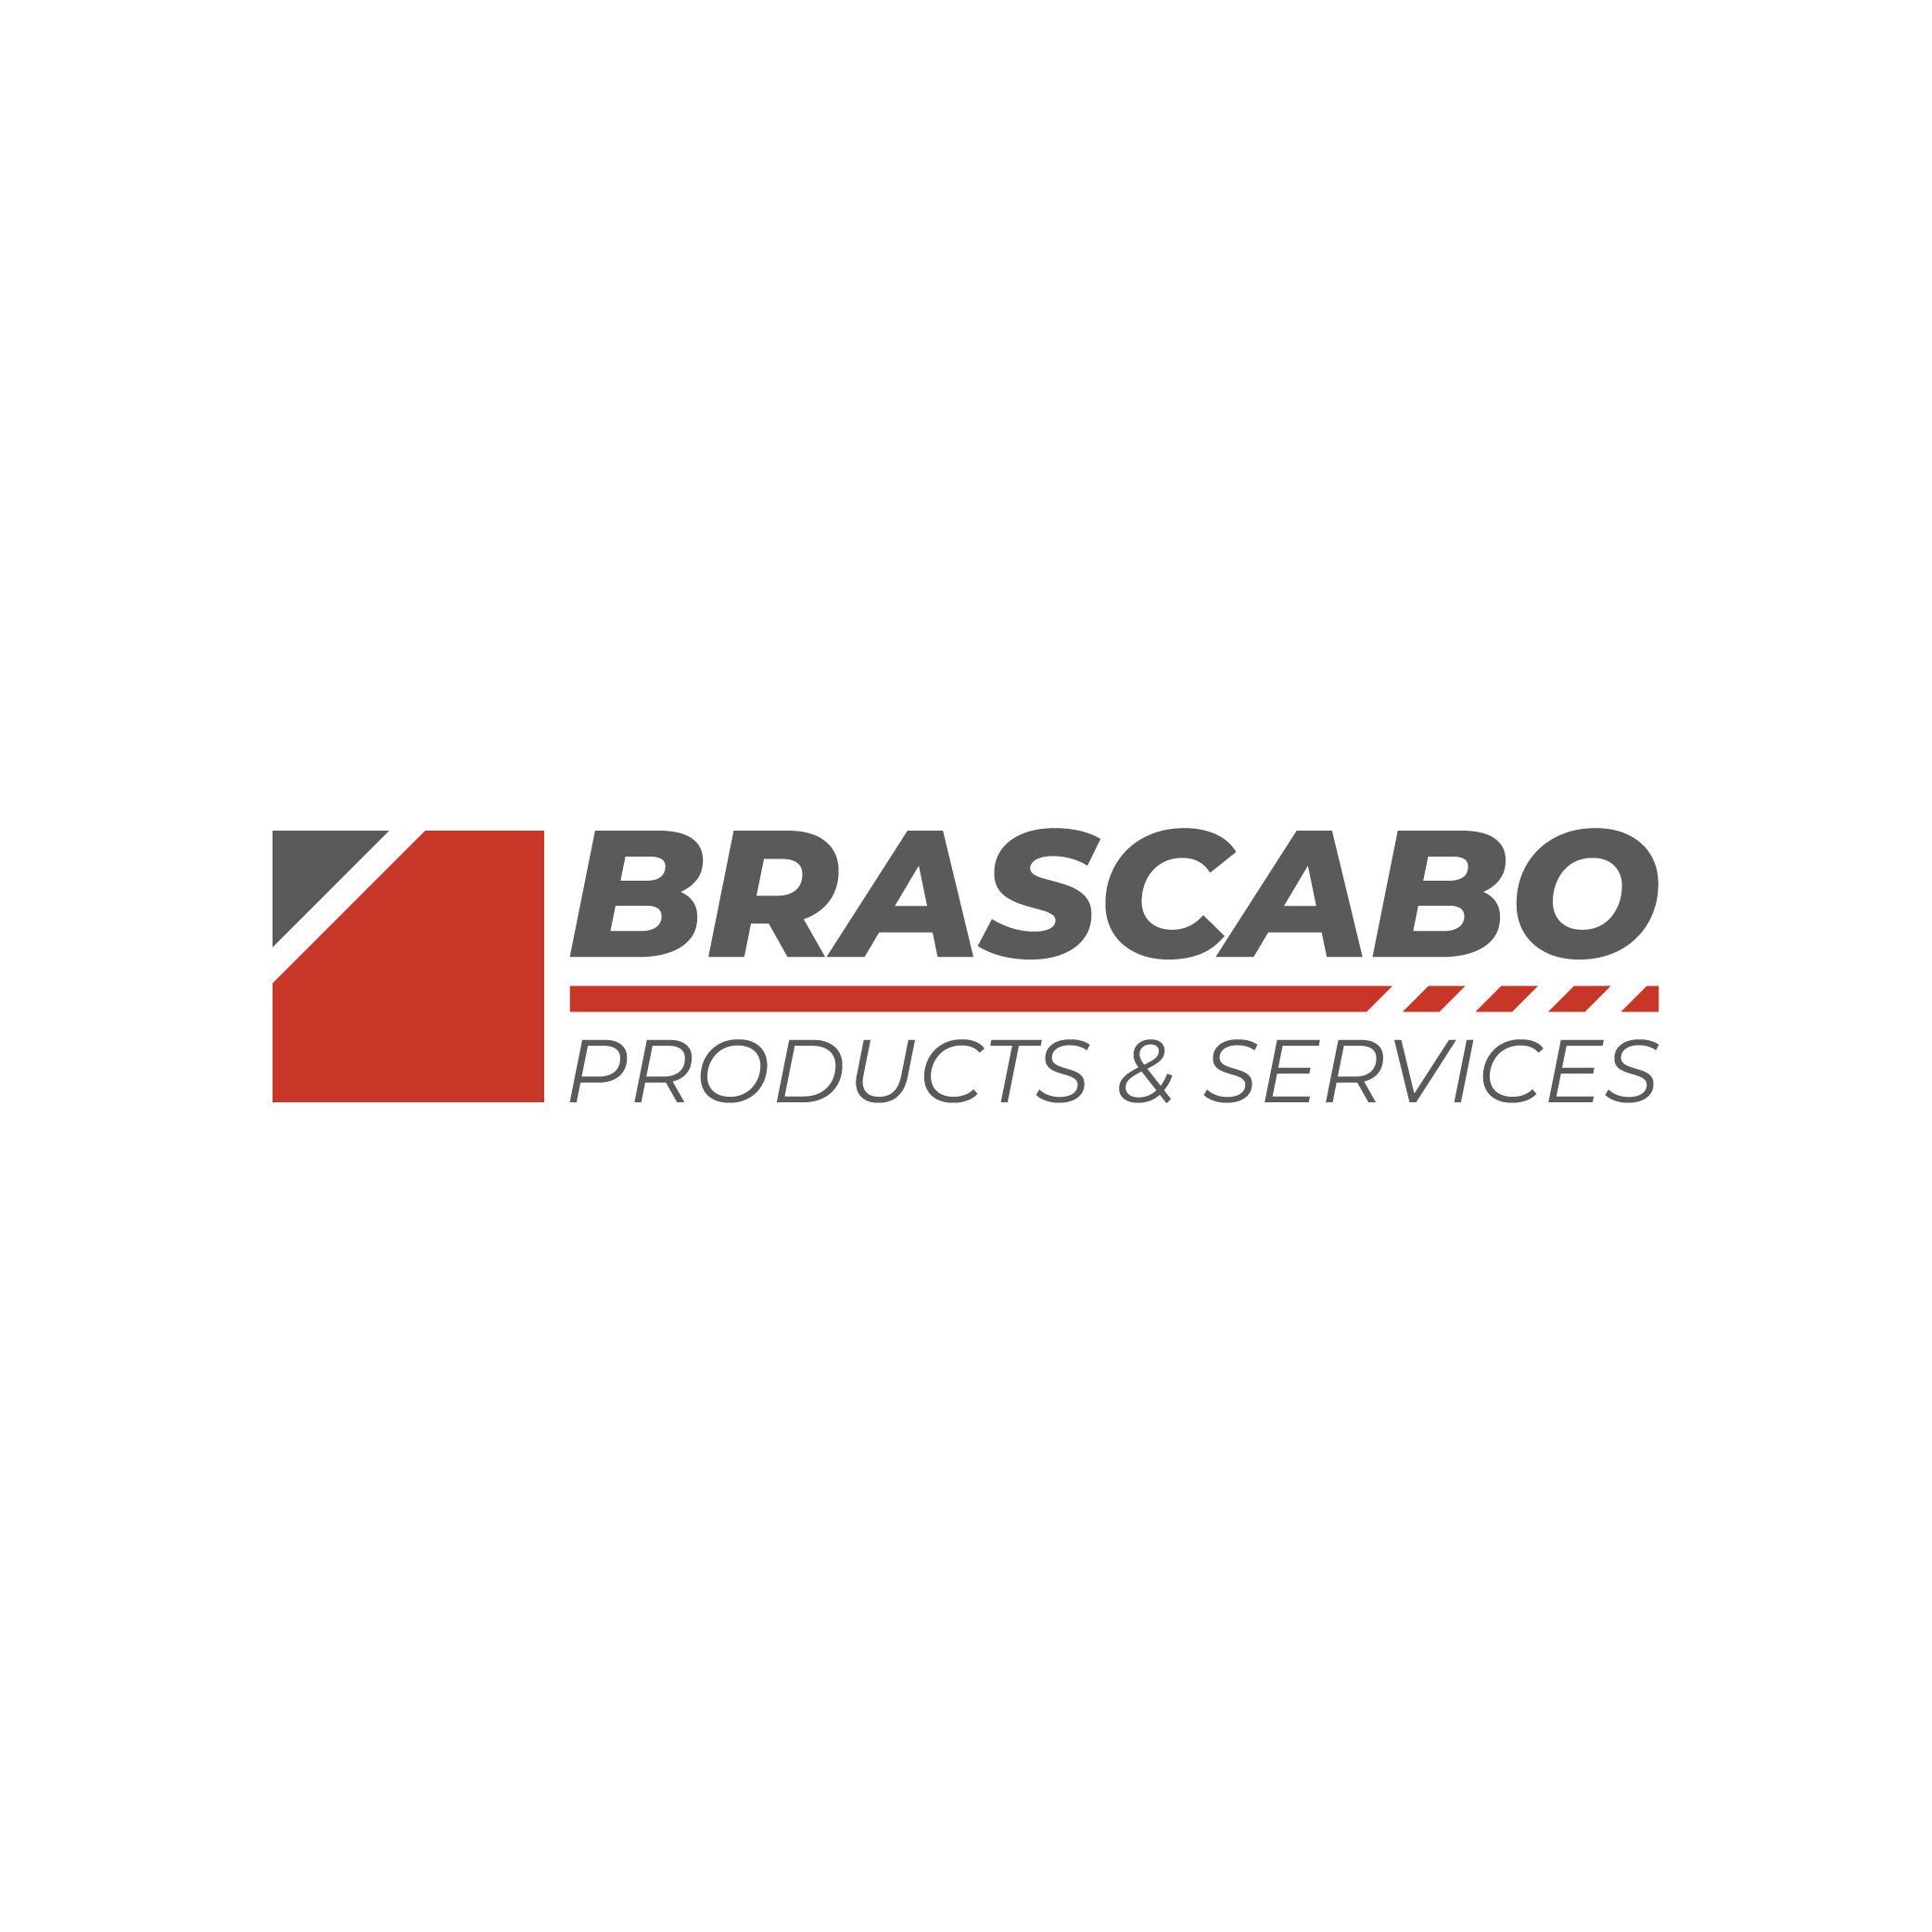 Brascabo